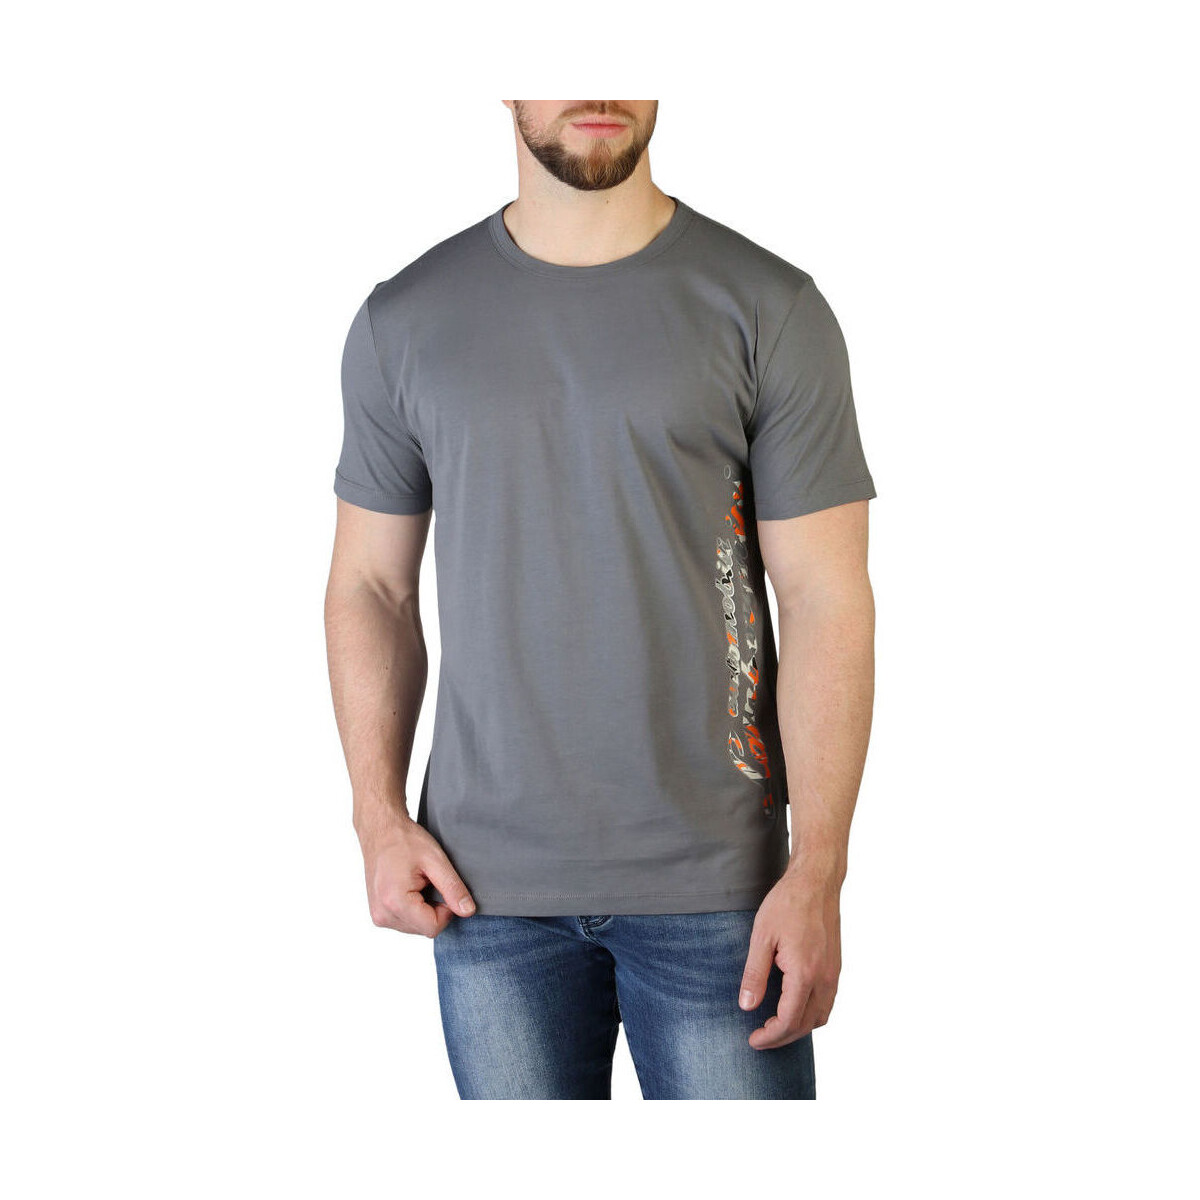 Vêtements Homme T-shirts manches courtes Lamborghini - b3xvb7t0 Gris